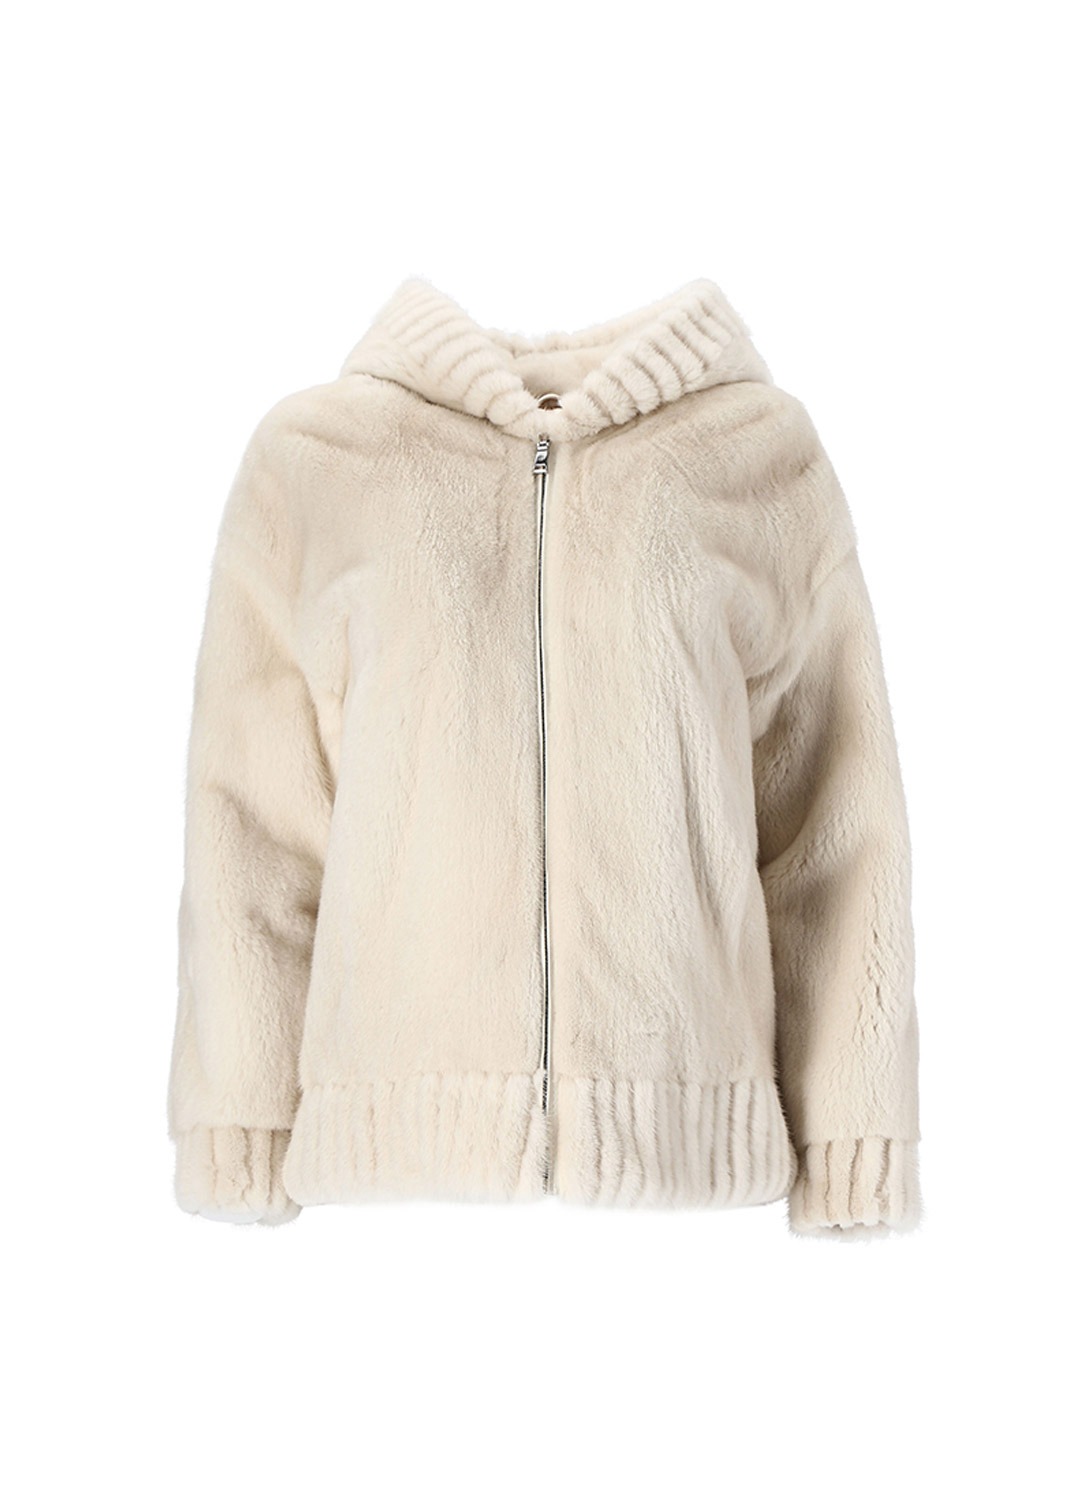 Hoody zip up mink coat [Pearl]